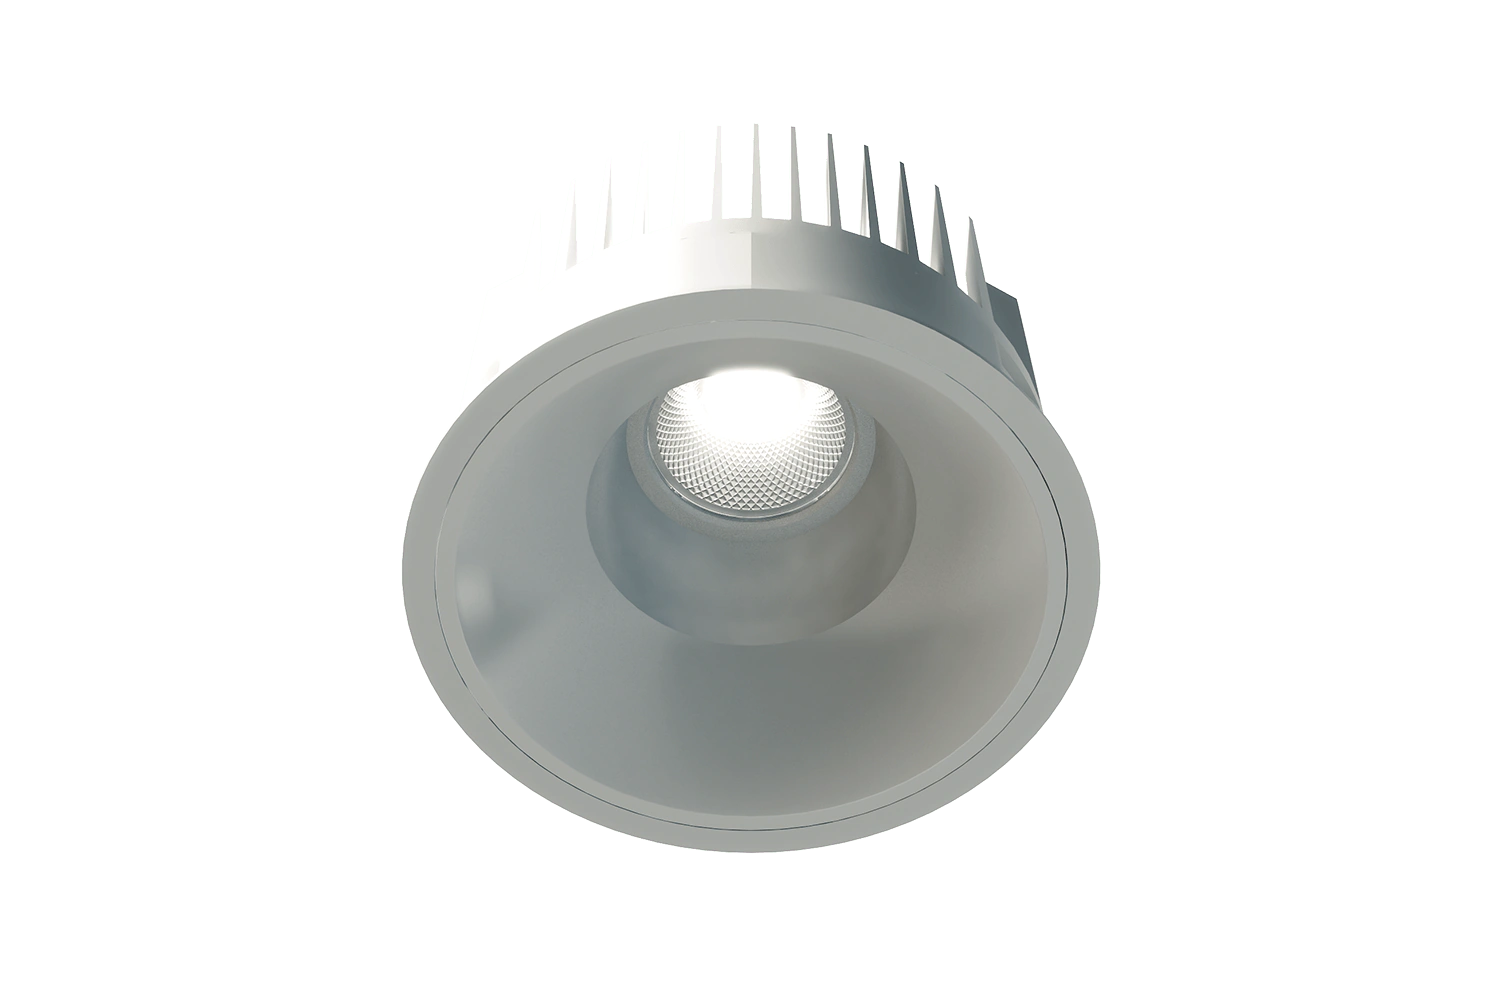 Produktleuchtenbild der Unio 620 LED Einbau-Downlight